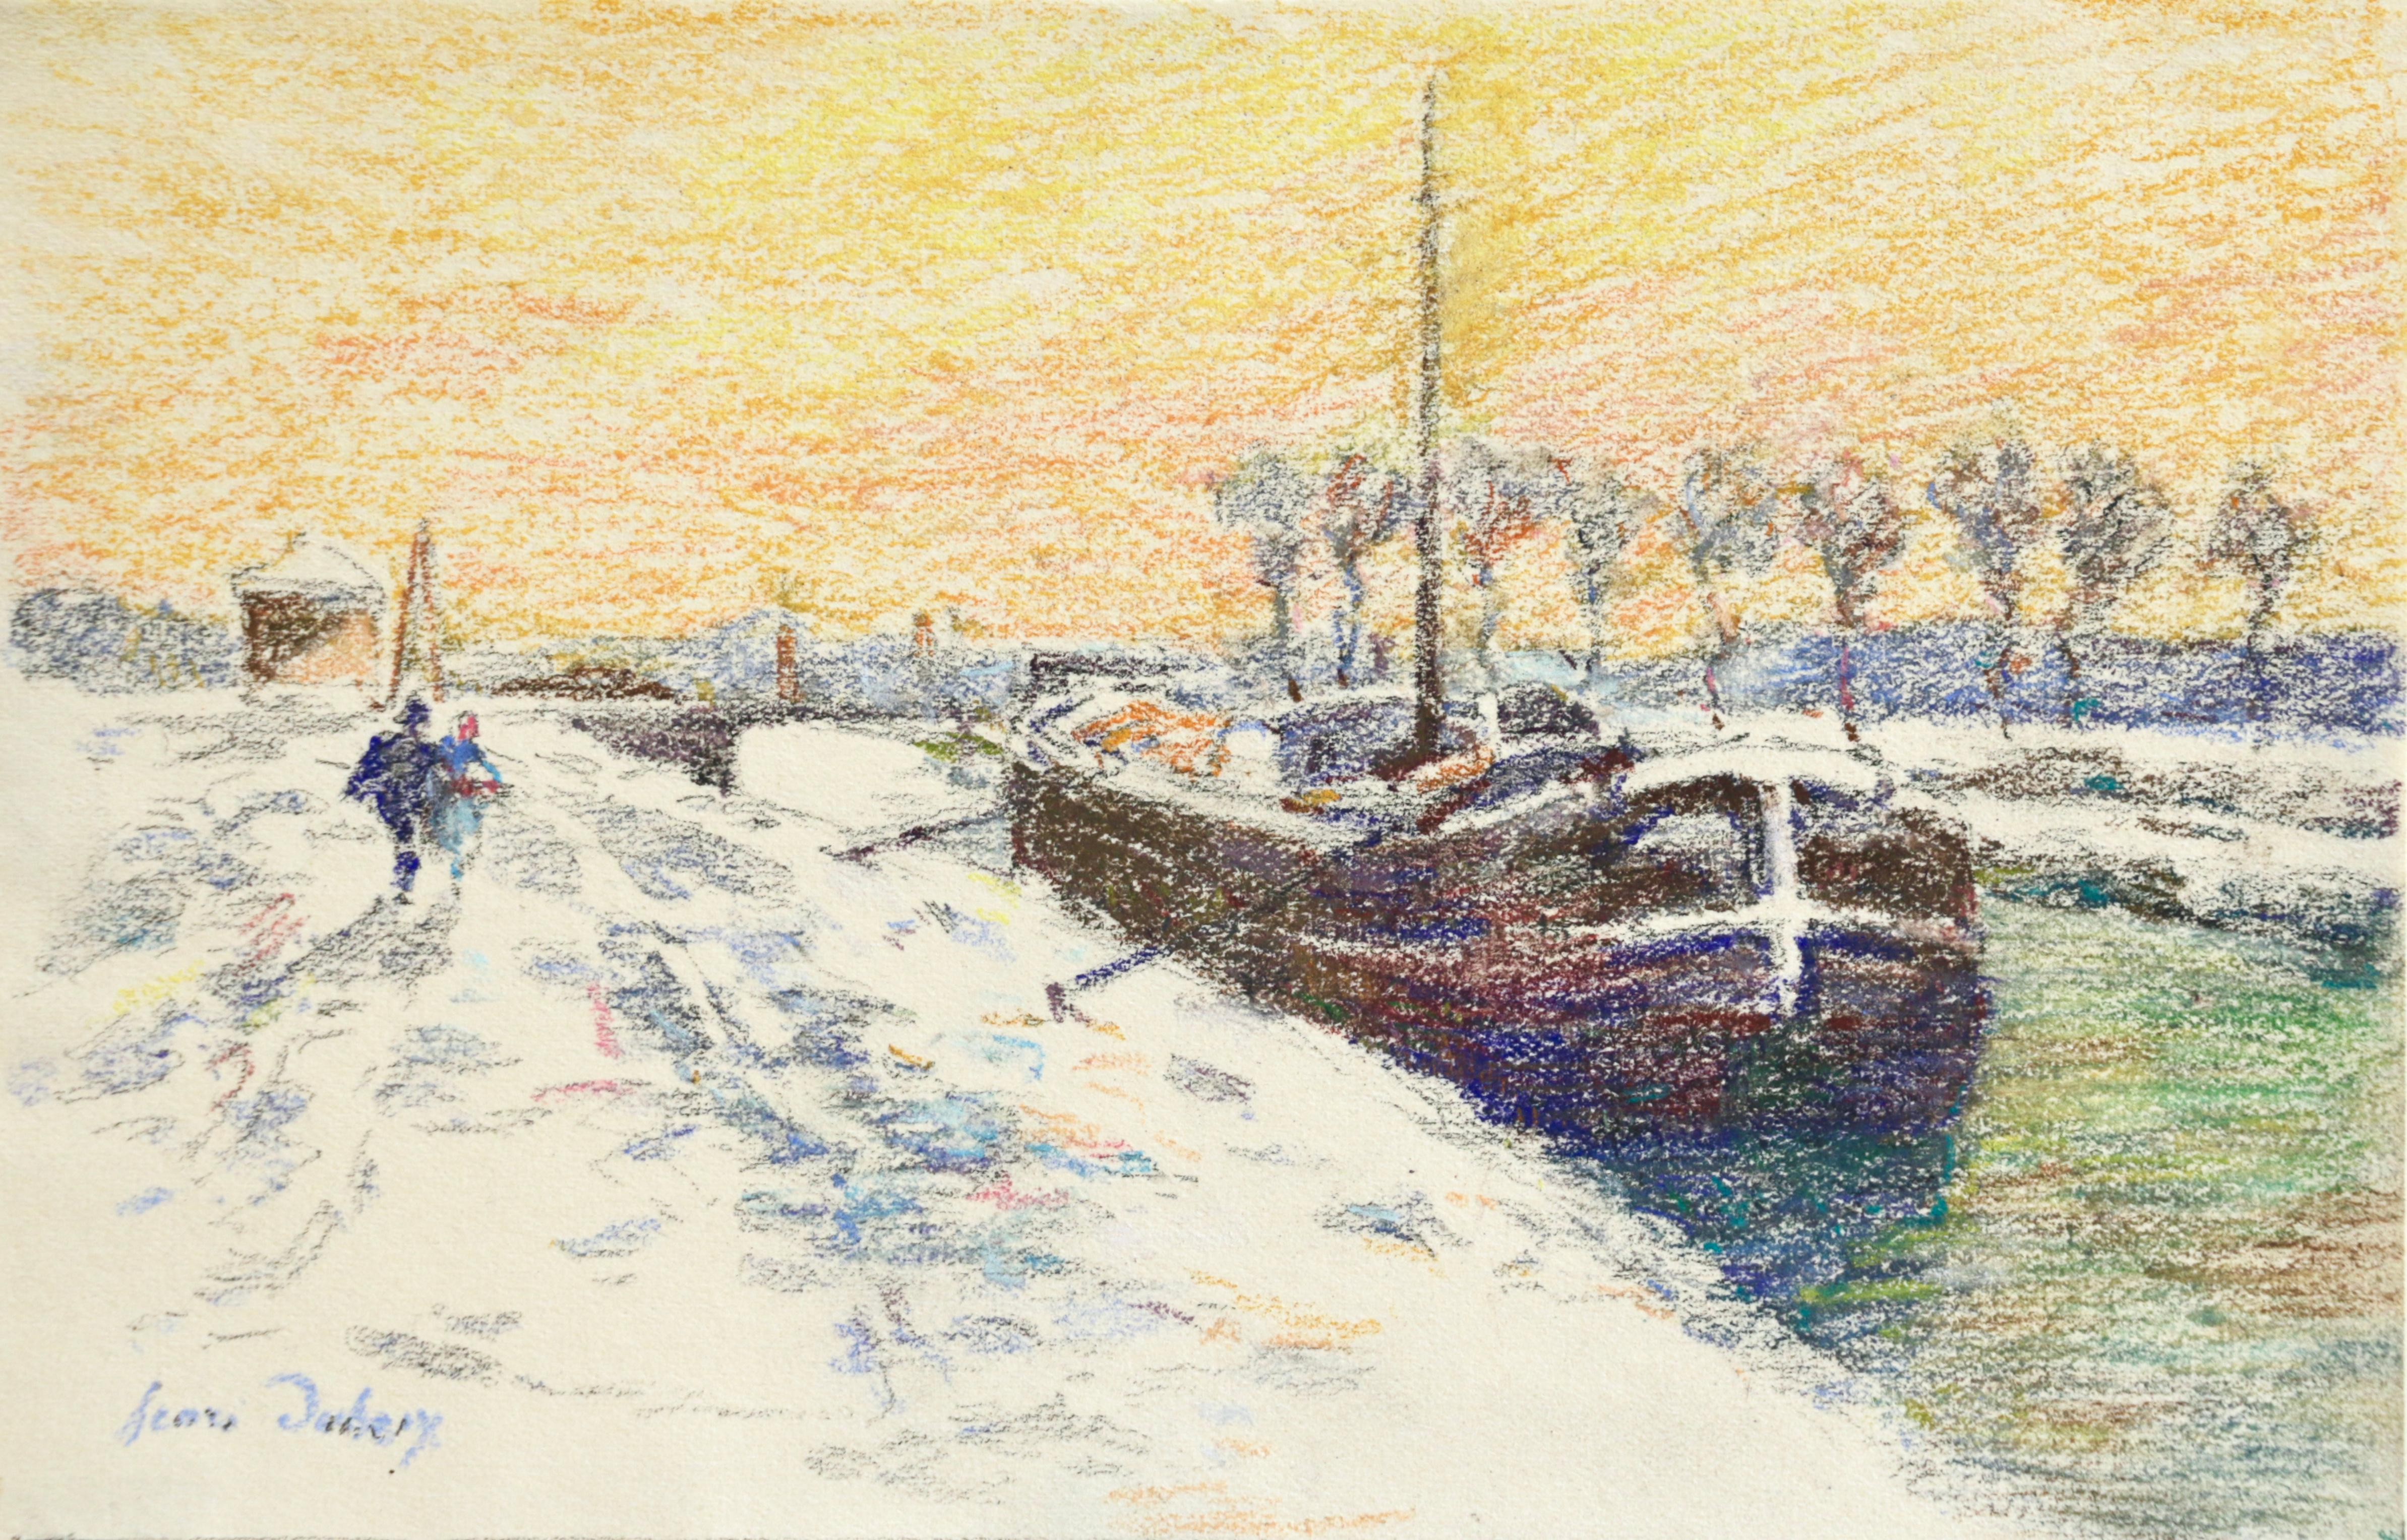 Henri Duhem Landscape Art - Canal at Douai-Winter - 19th Century Watercolor, Boat in Snow Landscape by Duhem